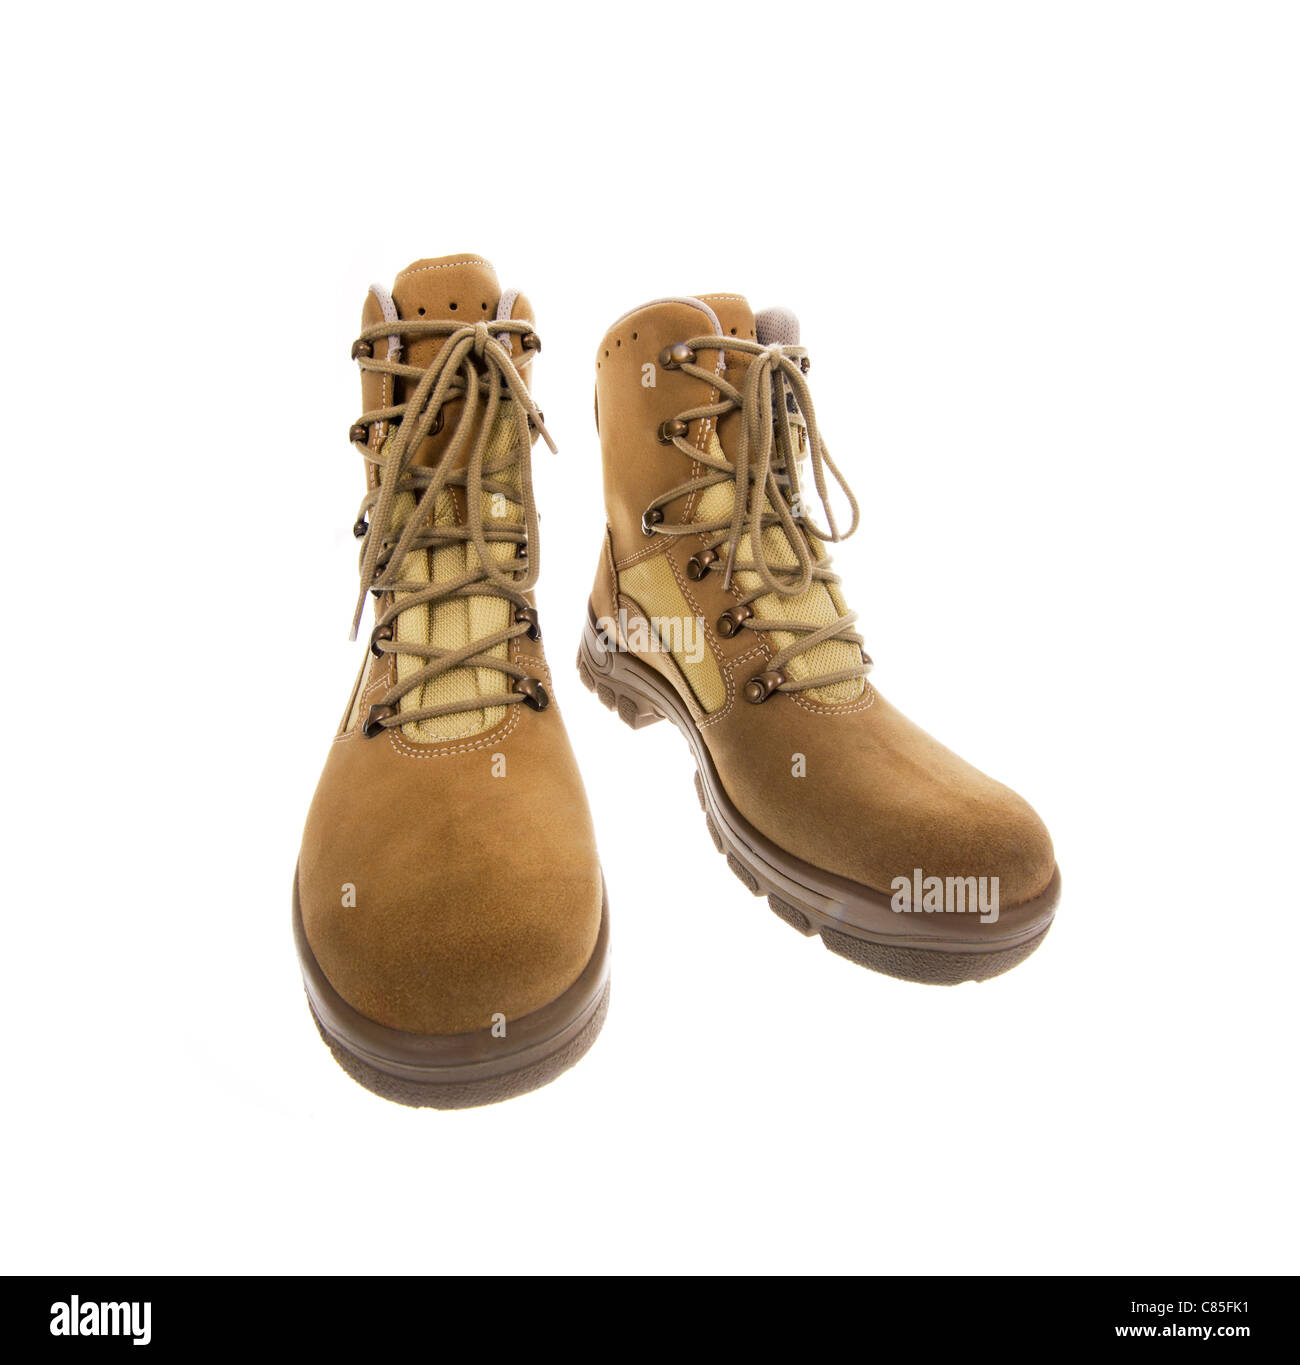 Stiefel zum Wandern der Wüste Armee neue Militärschuhe Verschleiß Fuß Füße Studio Marke Brandnew Schuhleder Stockfoto